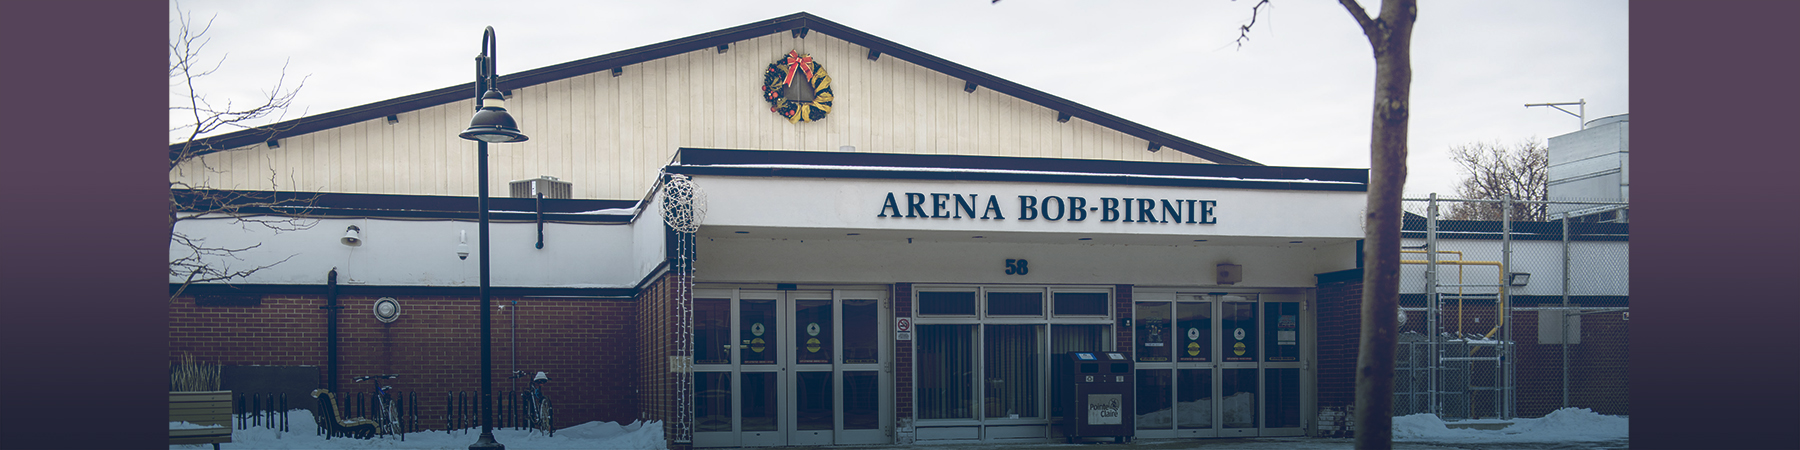 Aggiornamenti importanti riguardanti la Bob-Birnie Arena